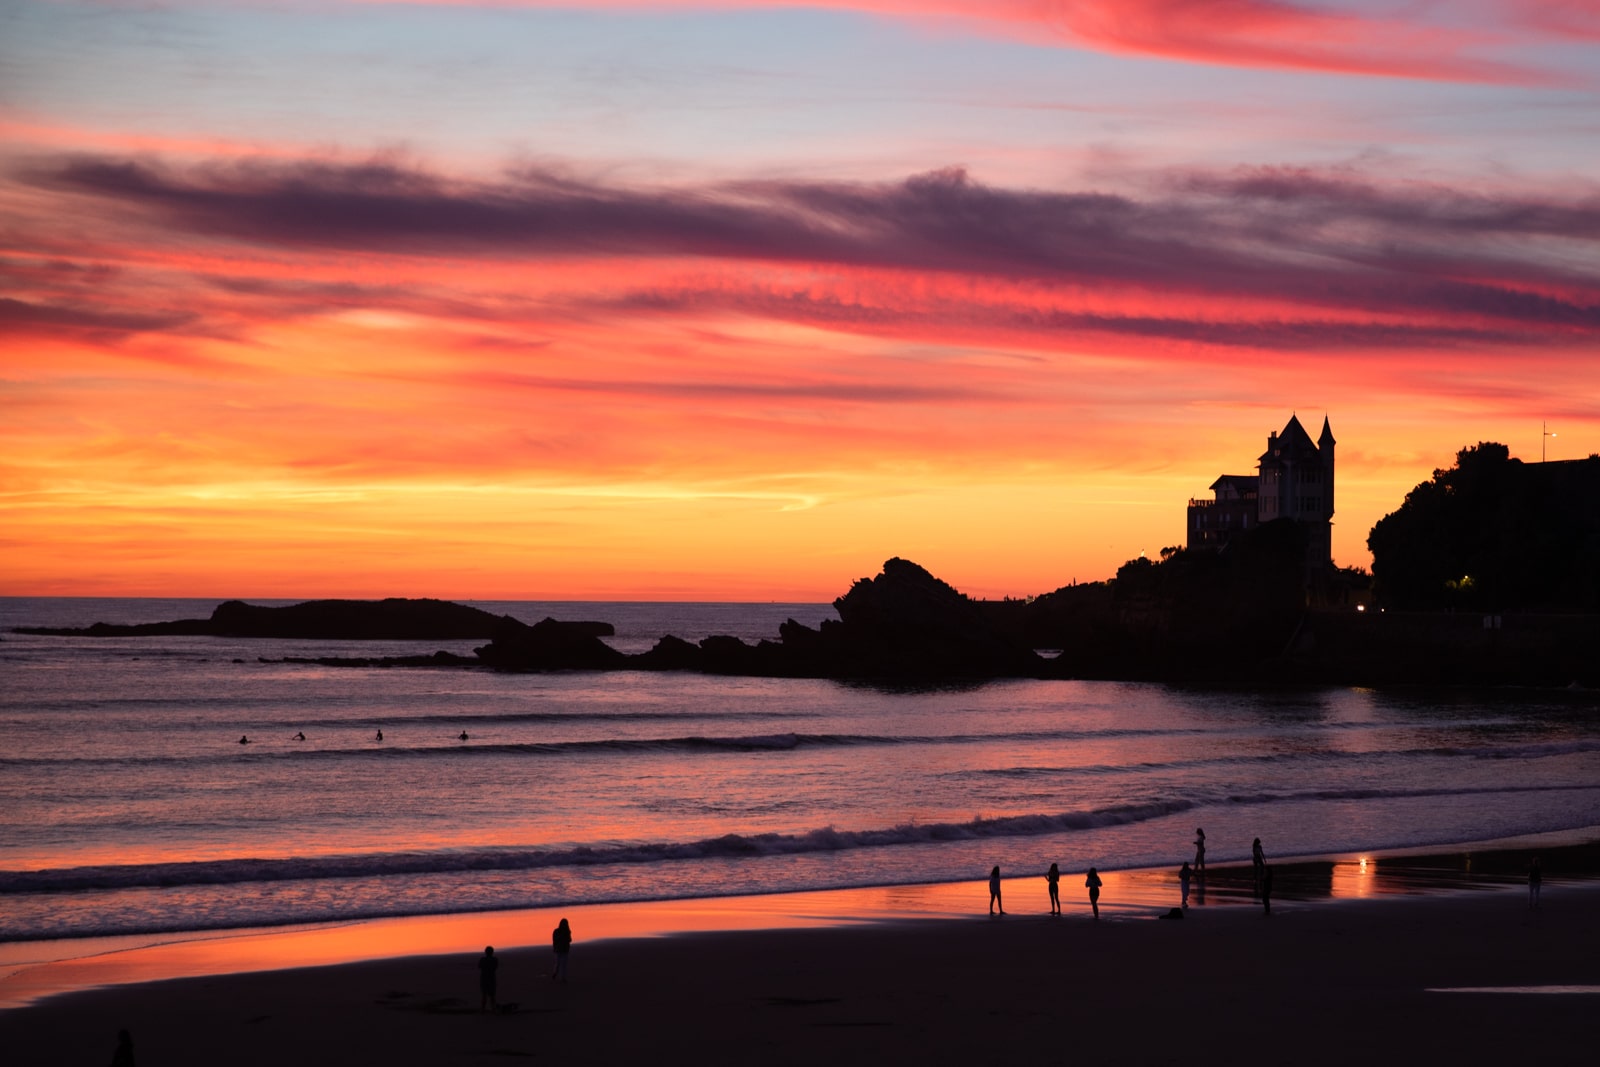 Villa Belza depuis la côte des basques au coucher du soleil